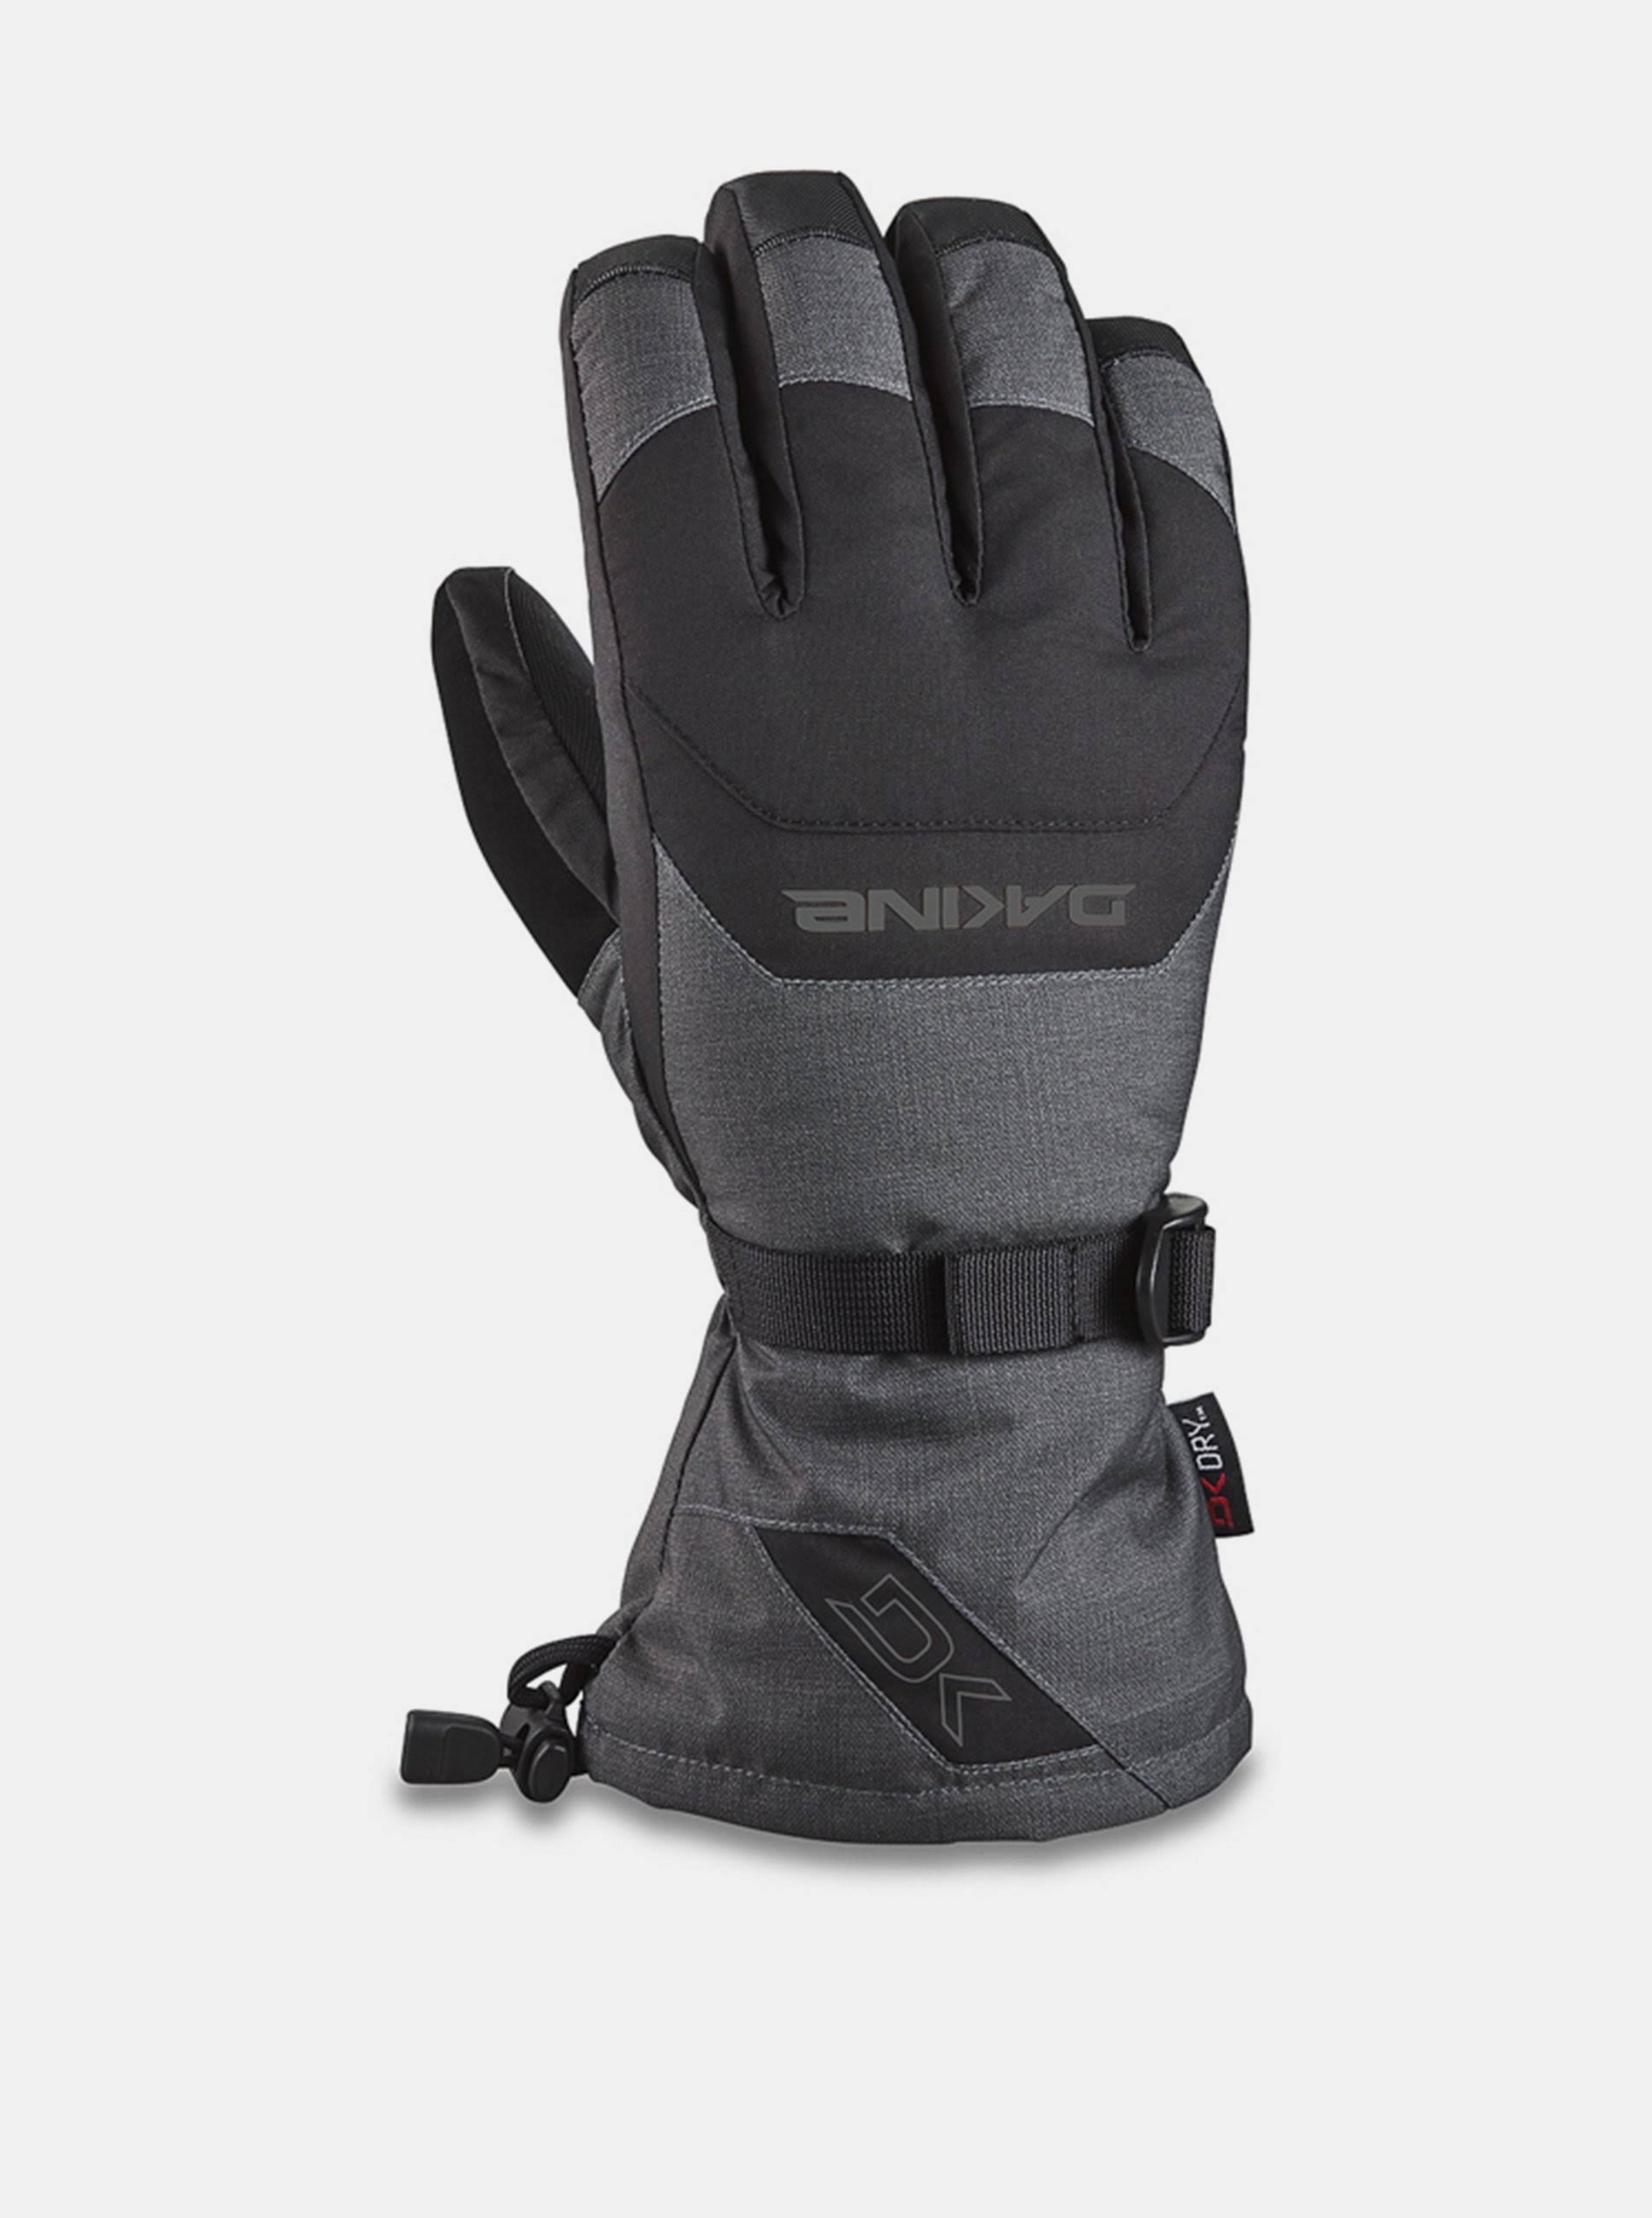 Dakine - Scout Glove Carbon - M - Gloves